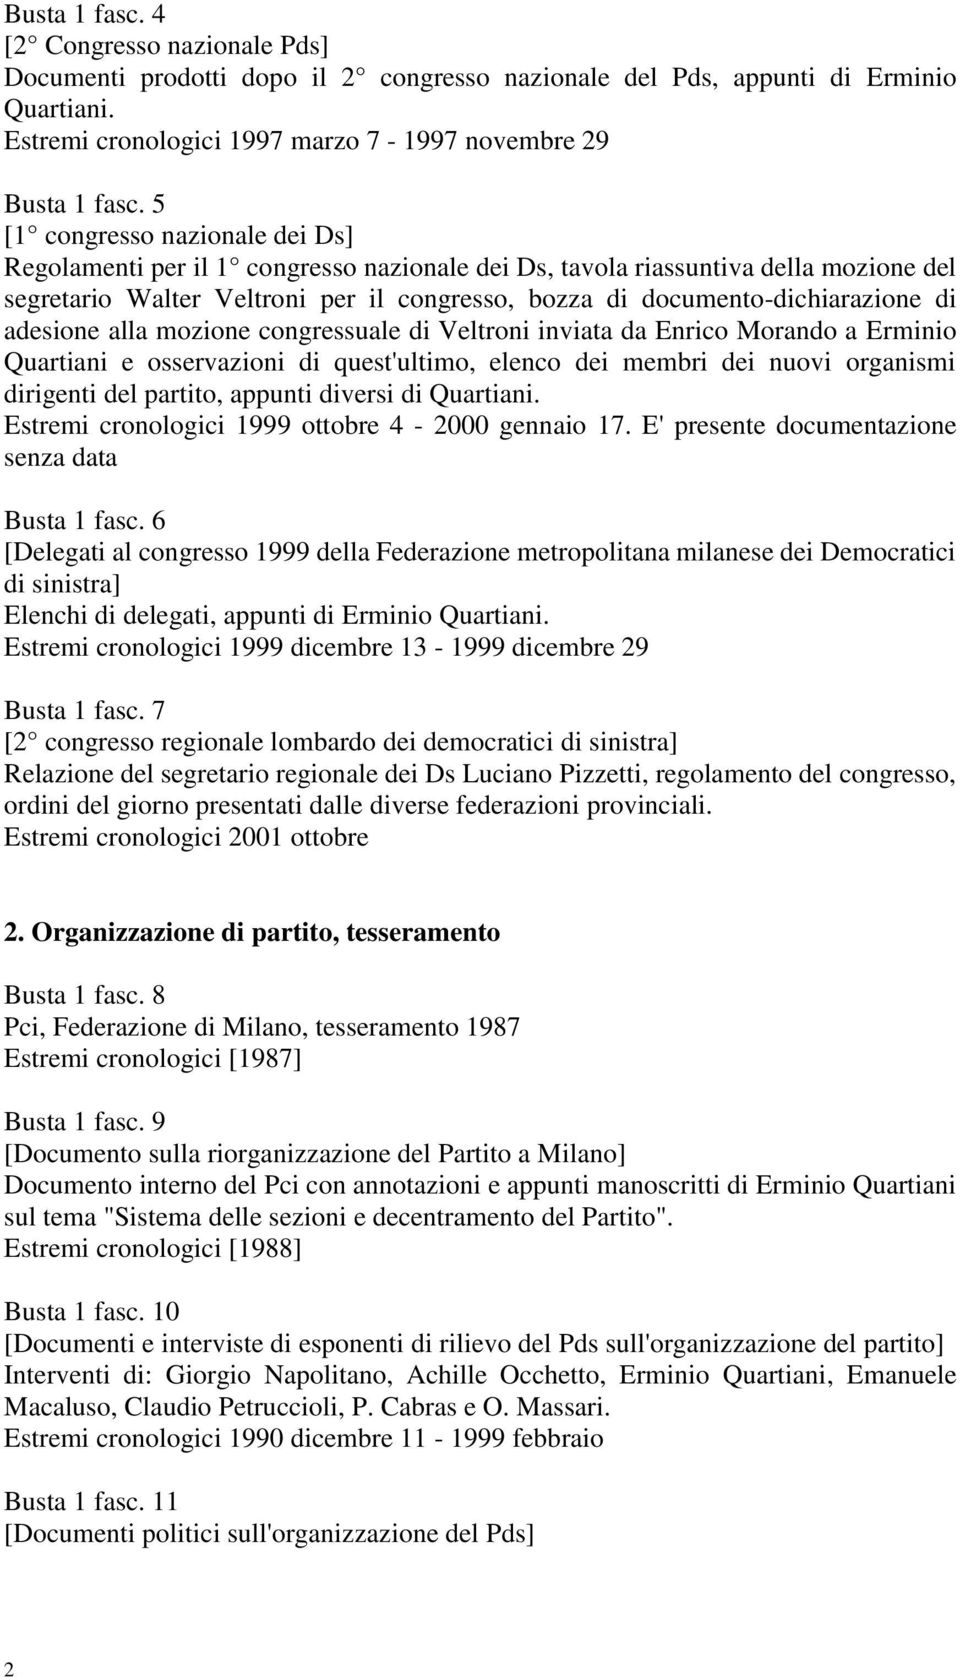 adesione alla mozione congressuale di Veltroni inviata da Enrico Morando a Erminio Quartiani e osservazioni di quest'ultimo, elenco dei membri dei nuovi organismi dirigenti del partito, appunti